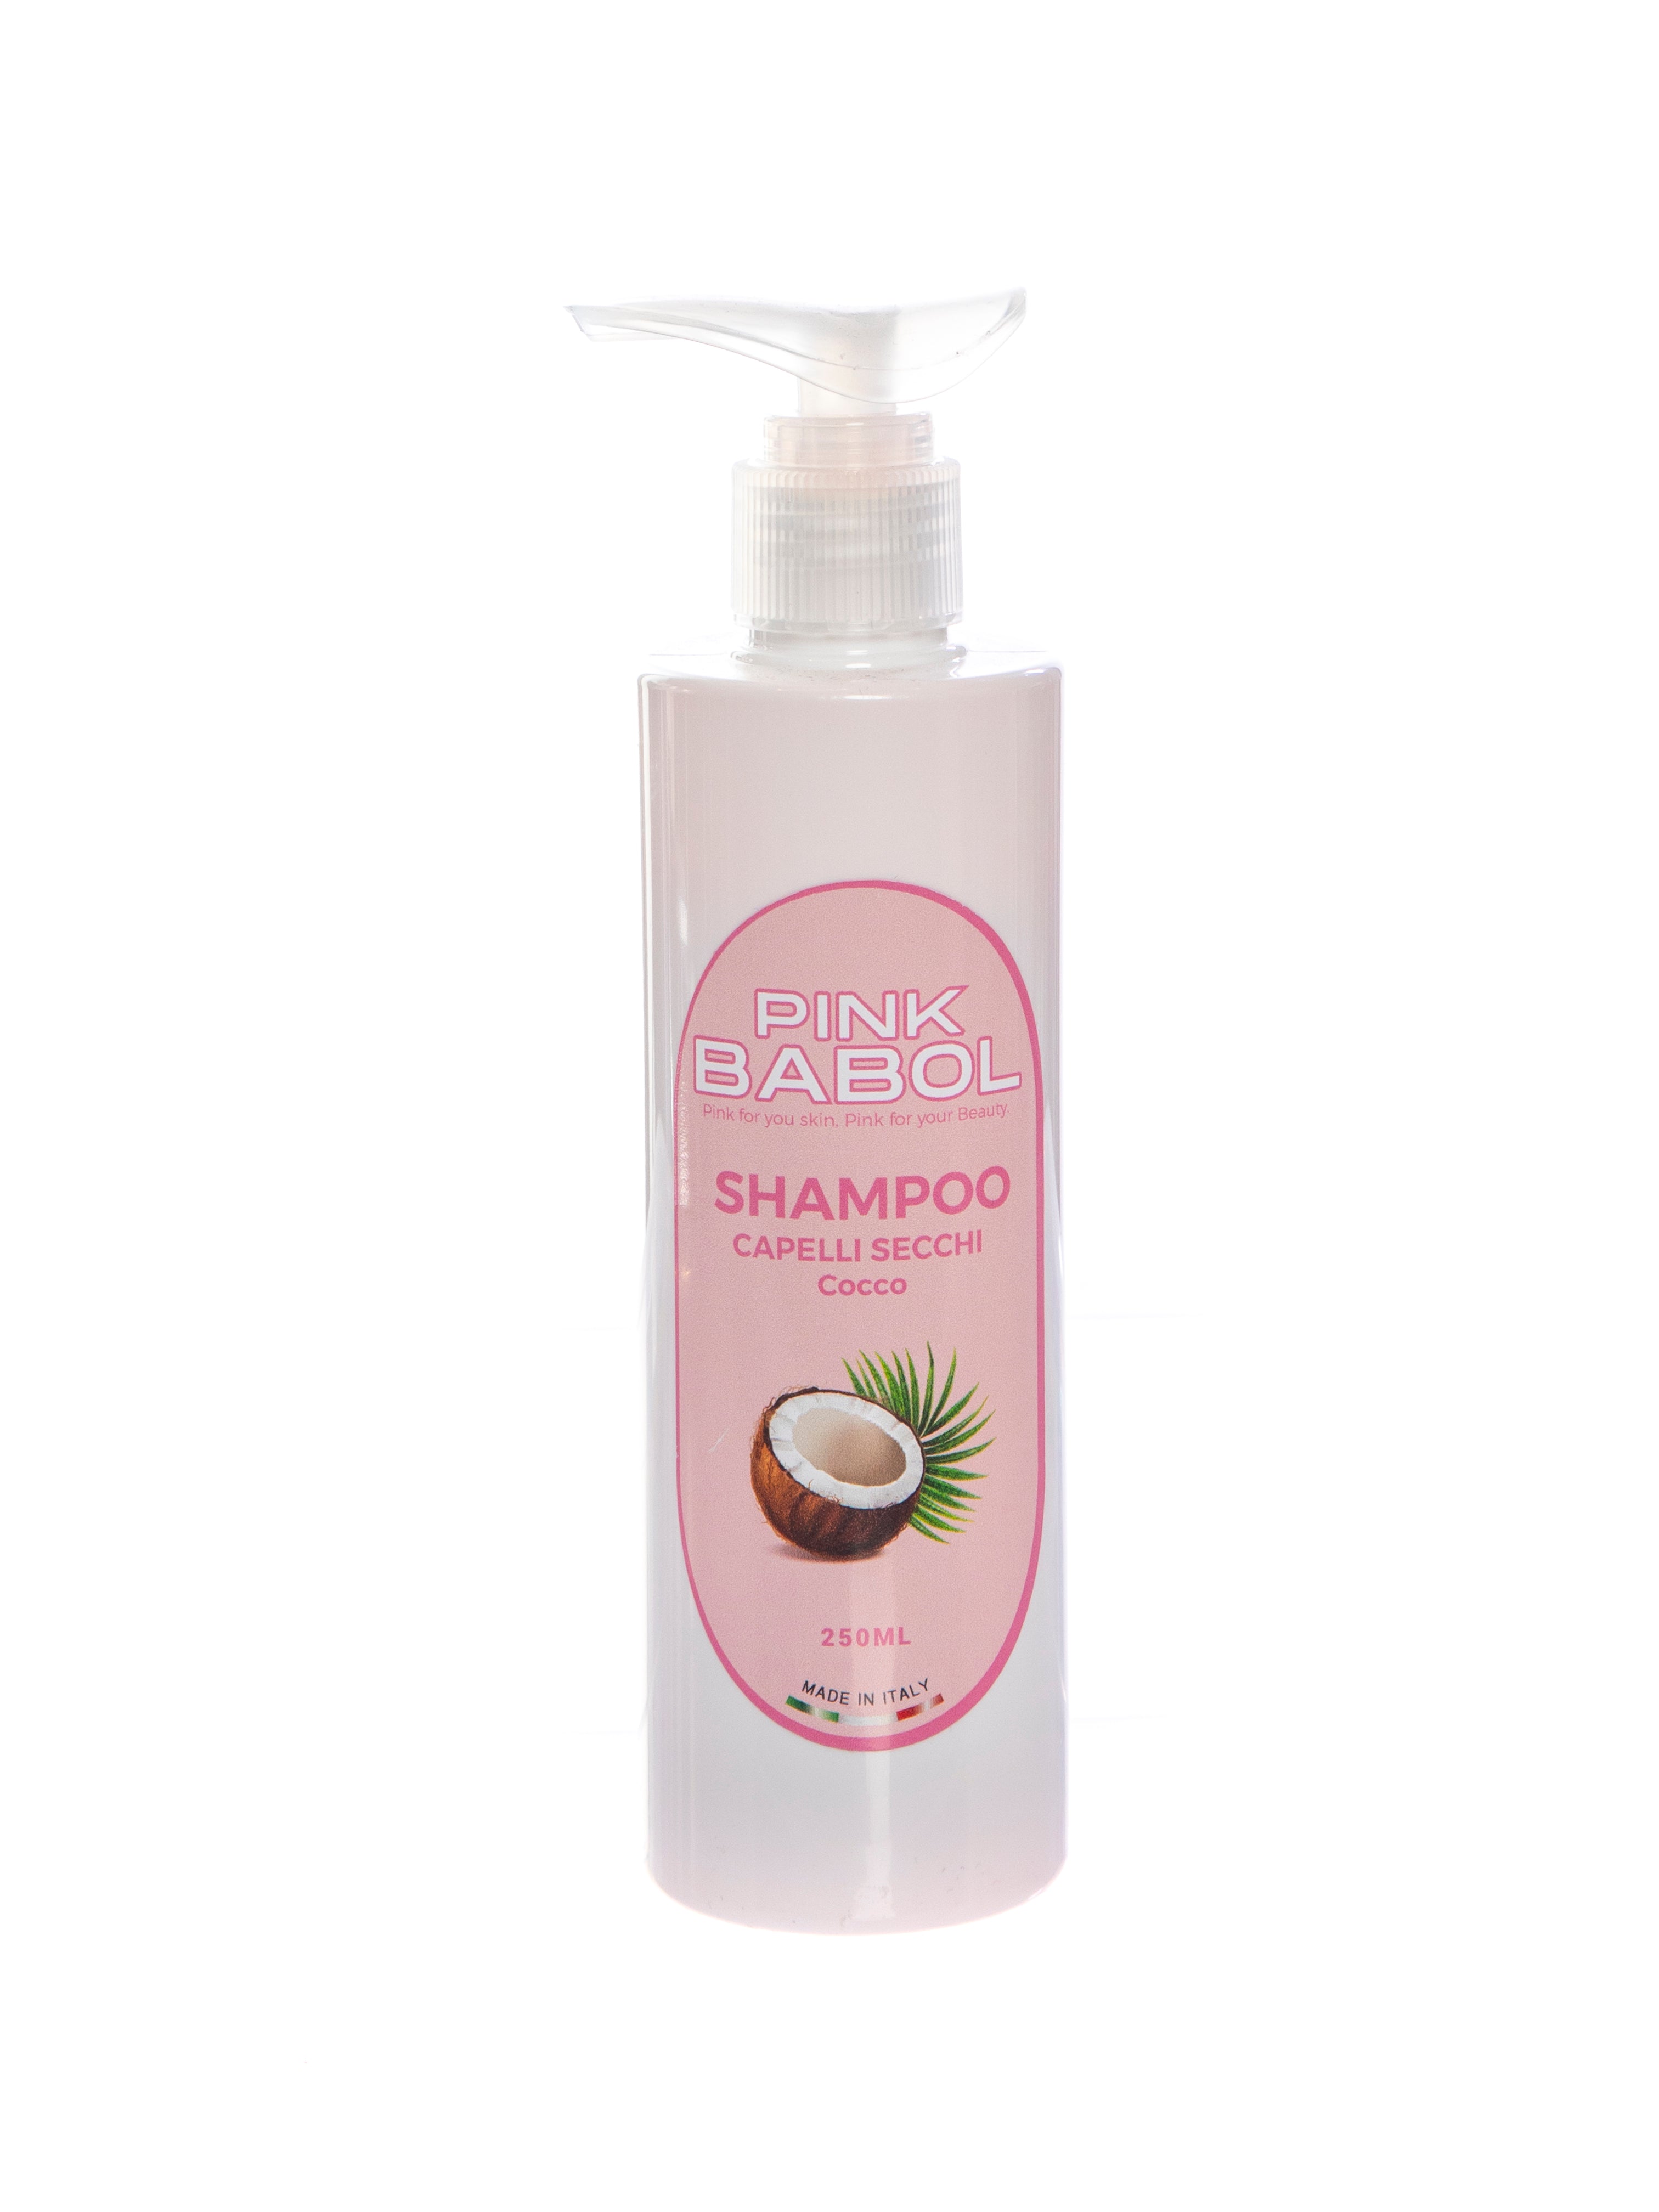 Shampoo per capelli secchi arricchito con cheratina-Pink Babol